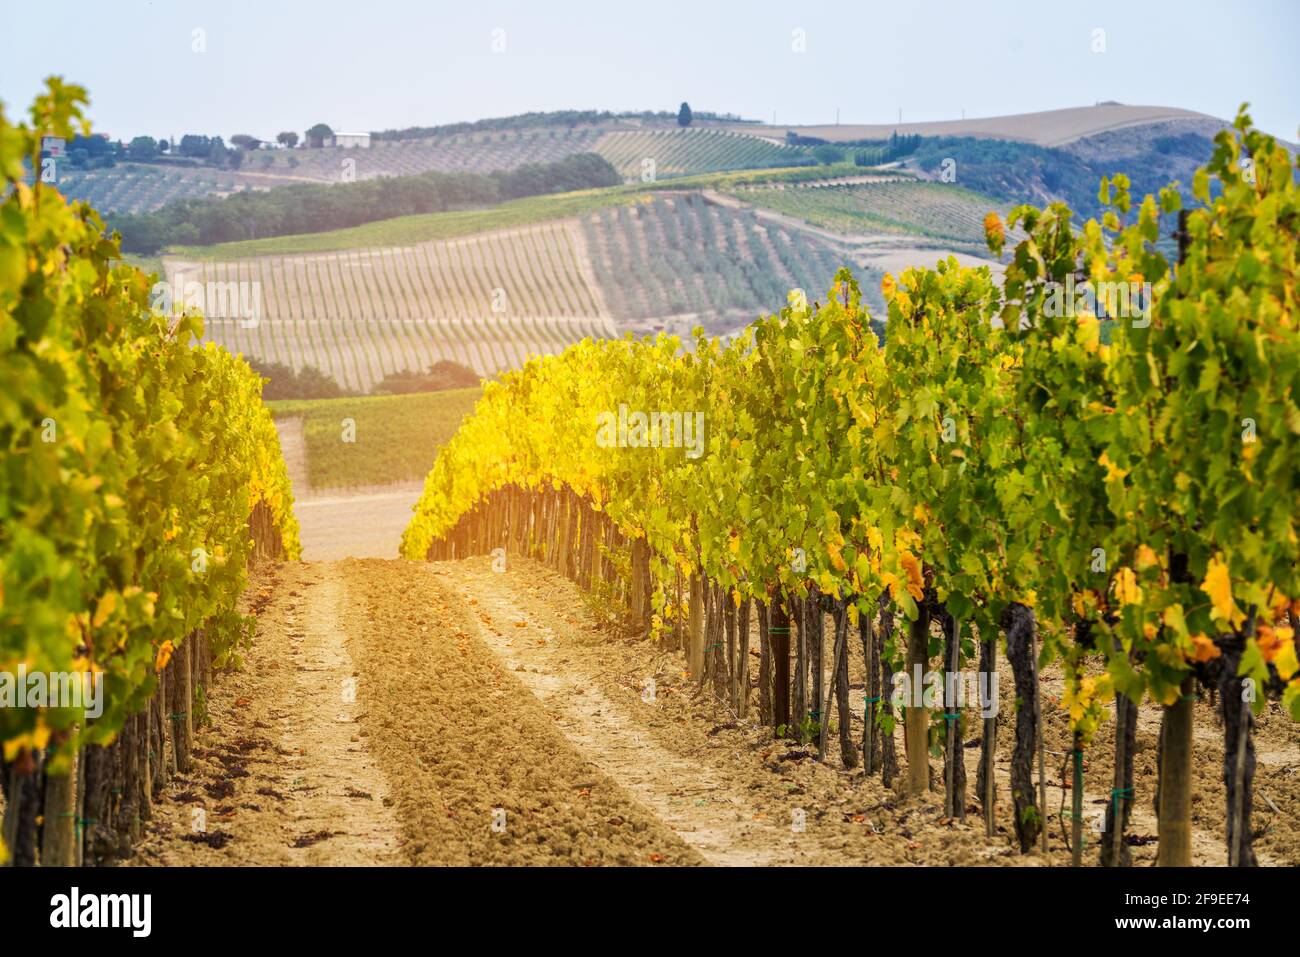 Paesaggio viticolo in Toscana, Italia. I vigneti toscani ospitano il vino più importante d'Italia. Foto Stock